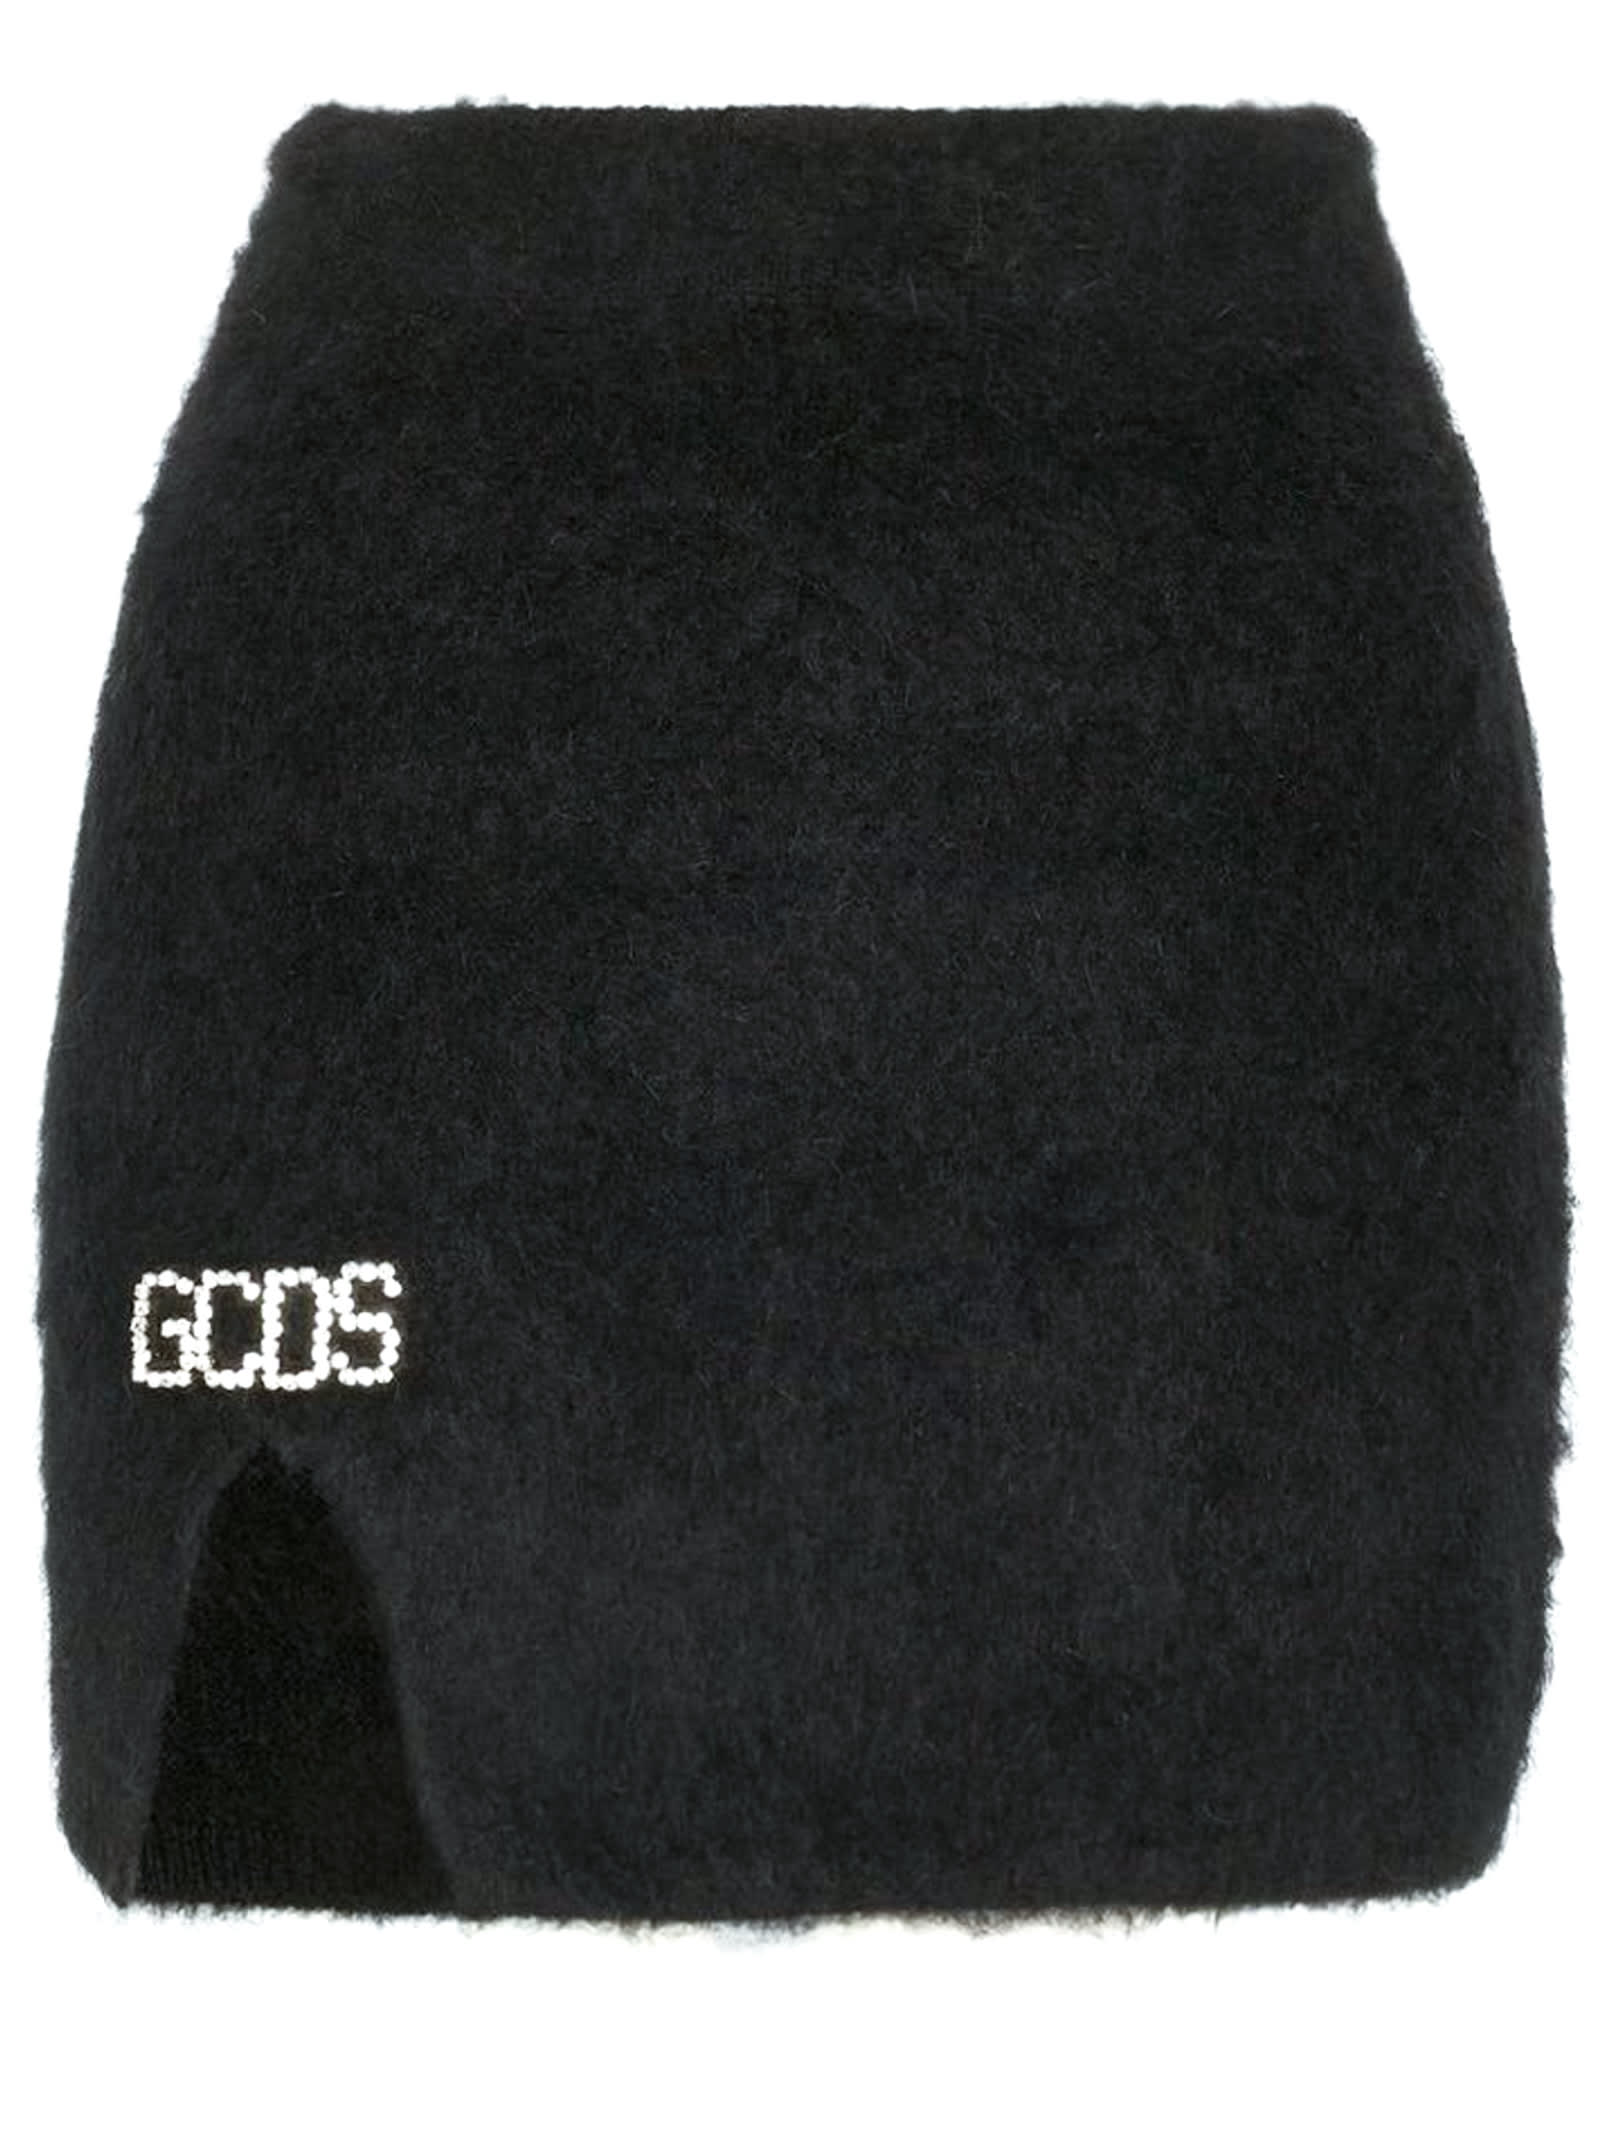 GCDS High-waisted Black Mohair Mini Skirt